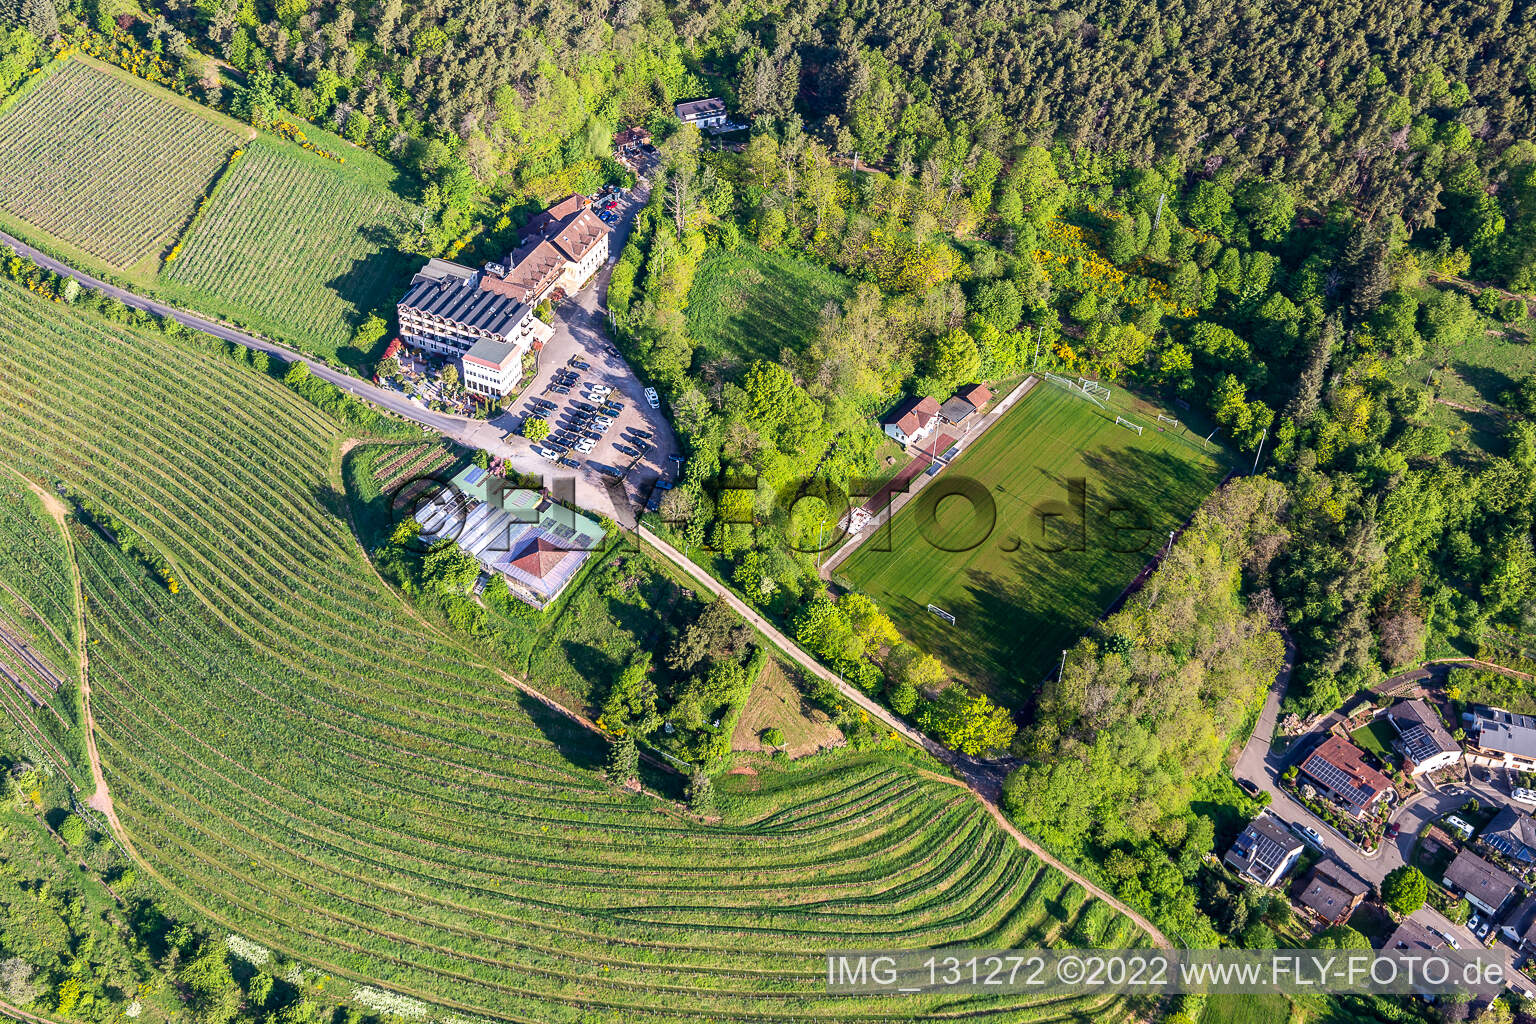 Luftbild von Hotel Haus am Weinberg in Sankt Martin im Bundesland Rheinland-Pfalz, Deutschland